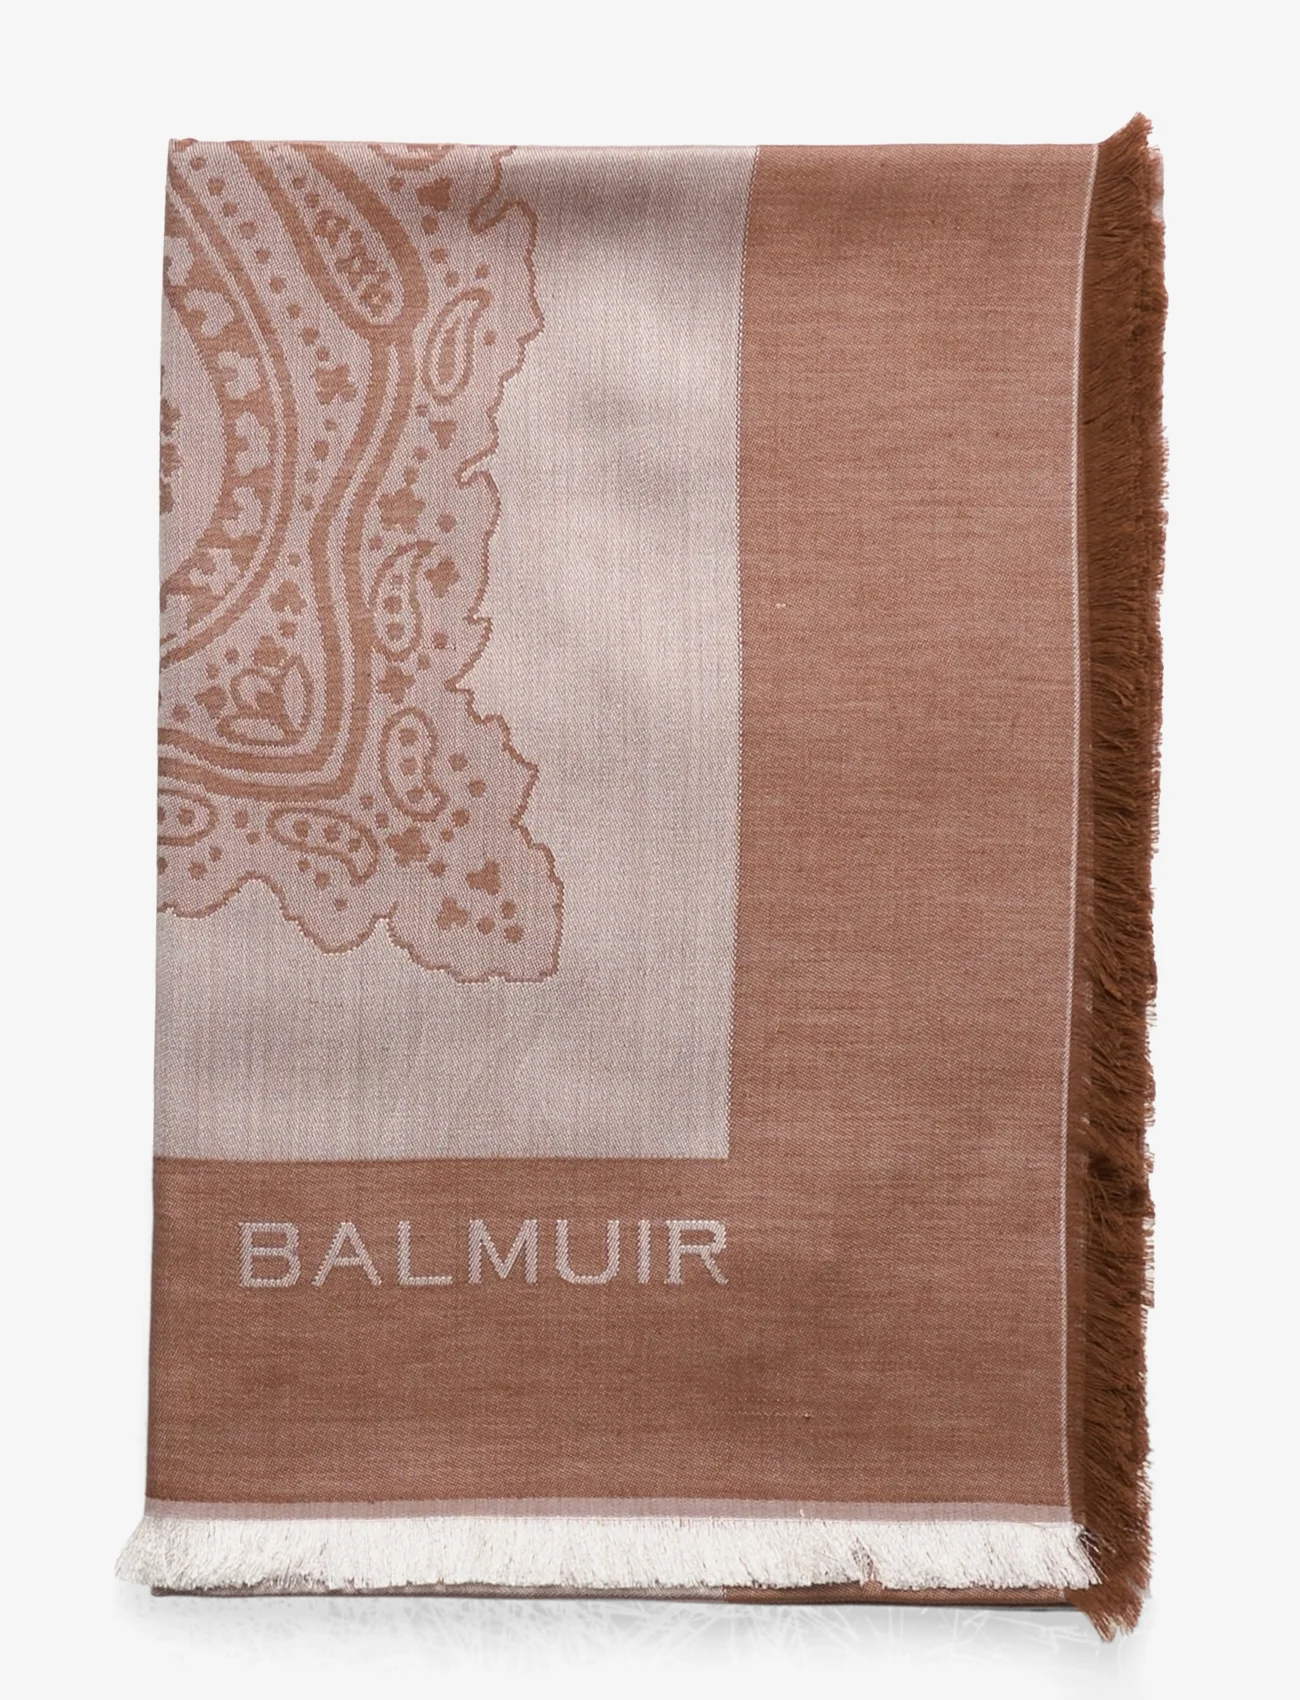 Balmuir - Capri scarf - geburtstagsgeschenke - desert sand - 1